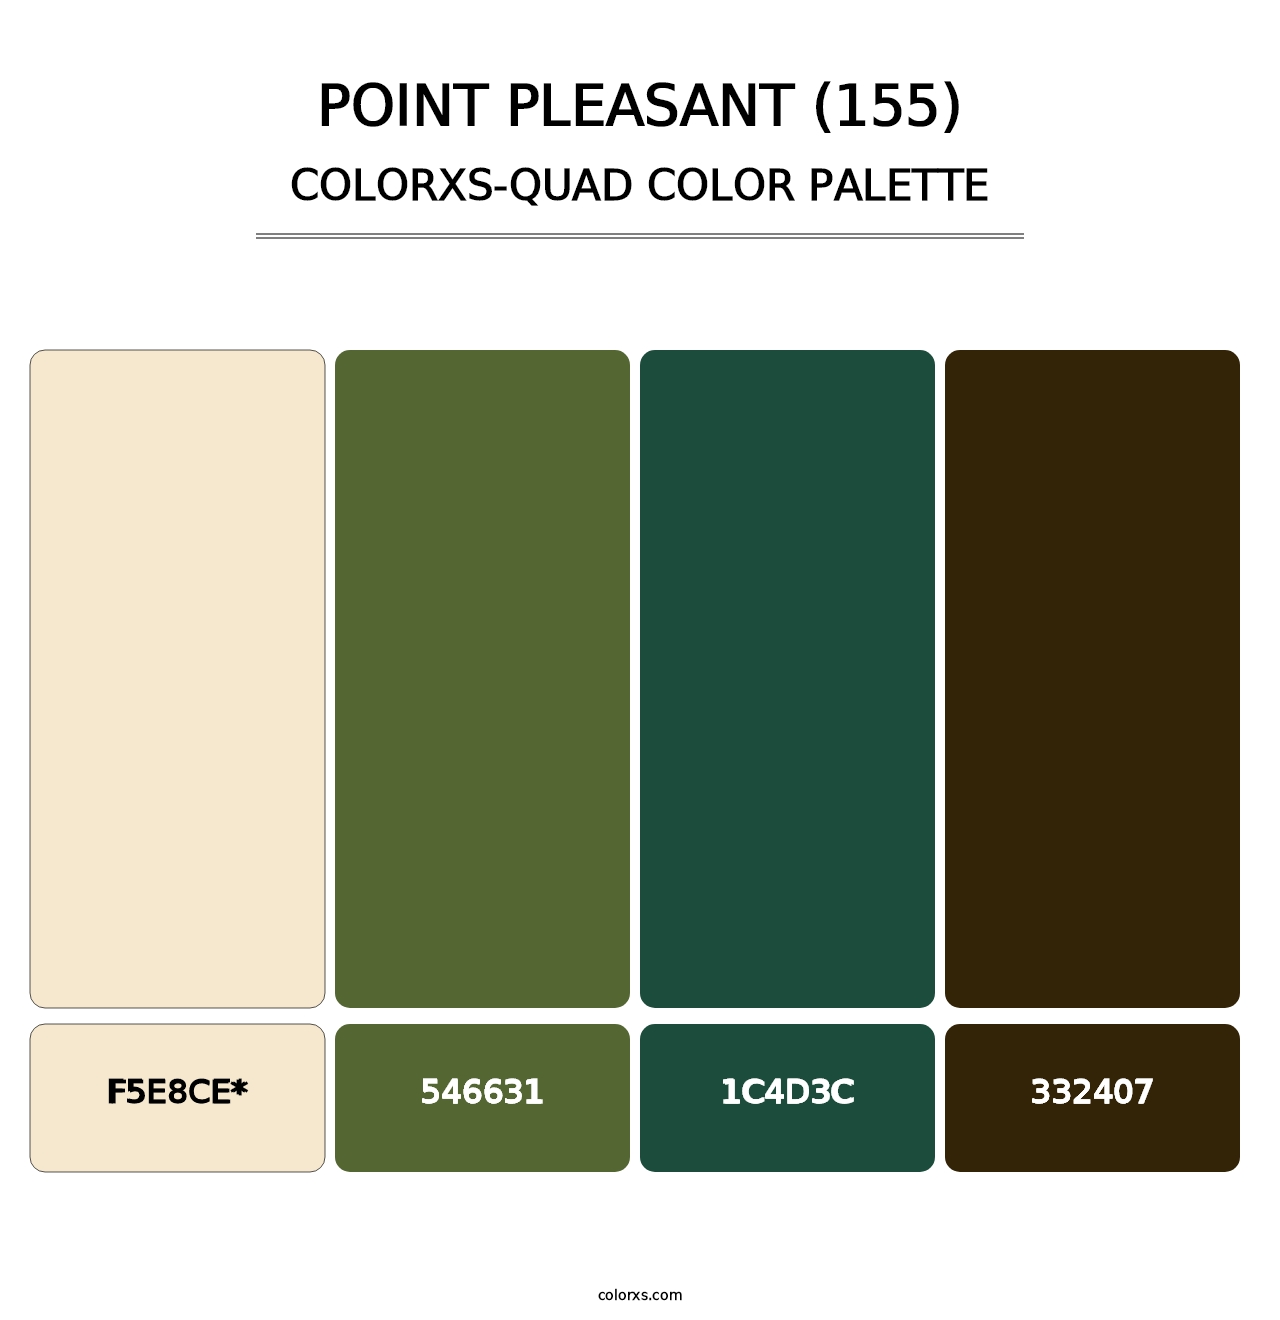 Point Pleasant (155) - Colorxs Quad Palette